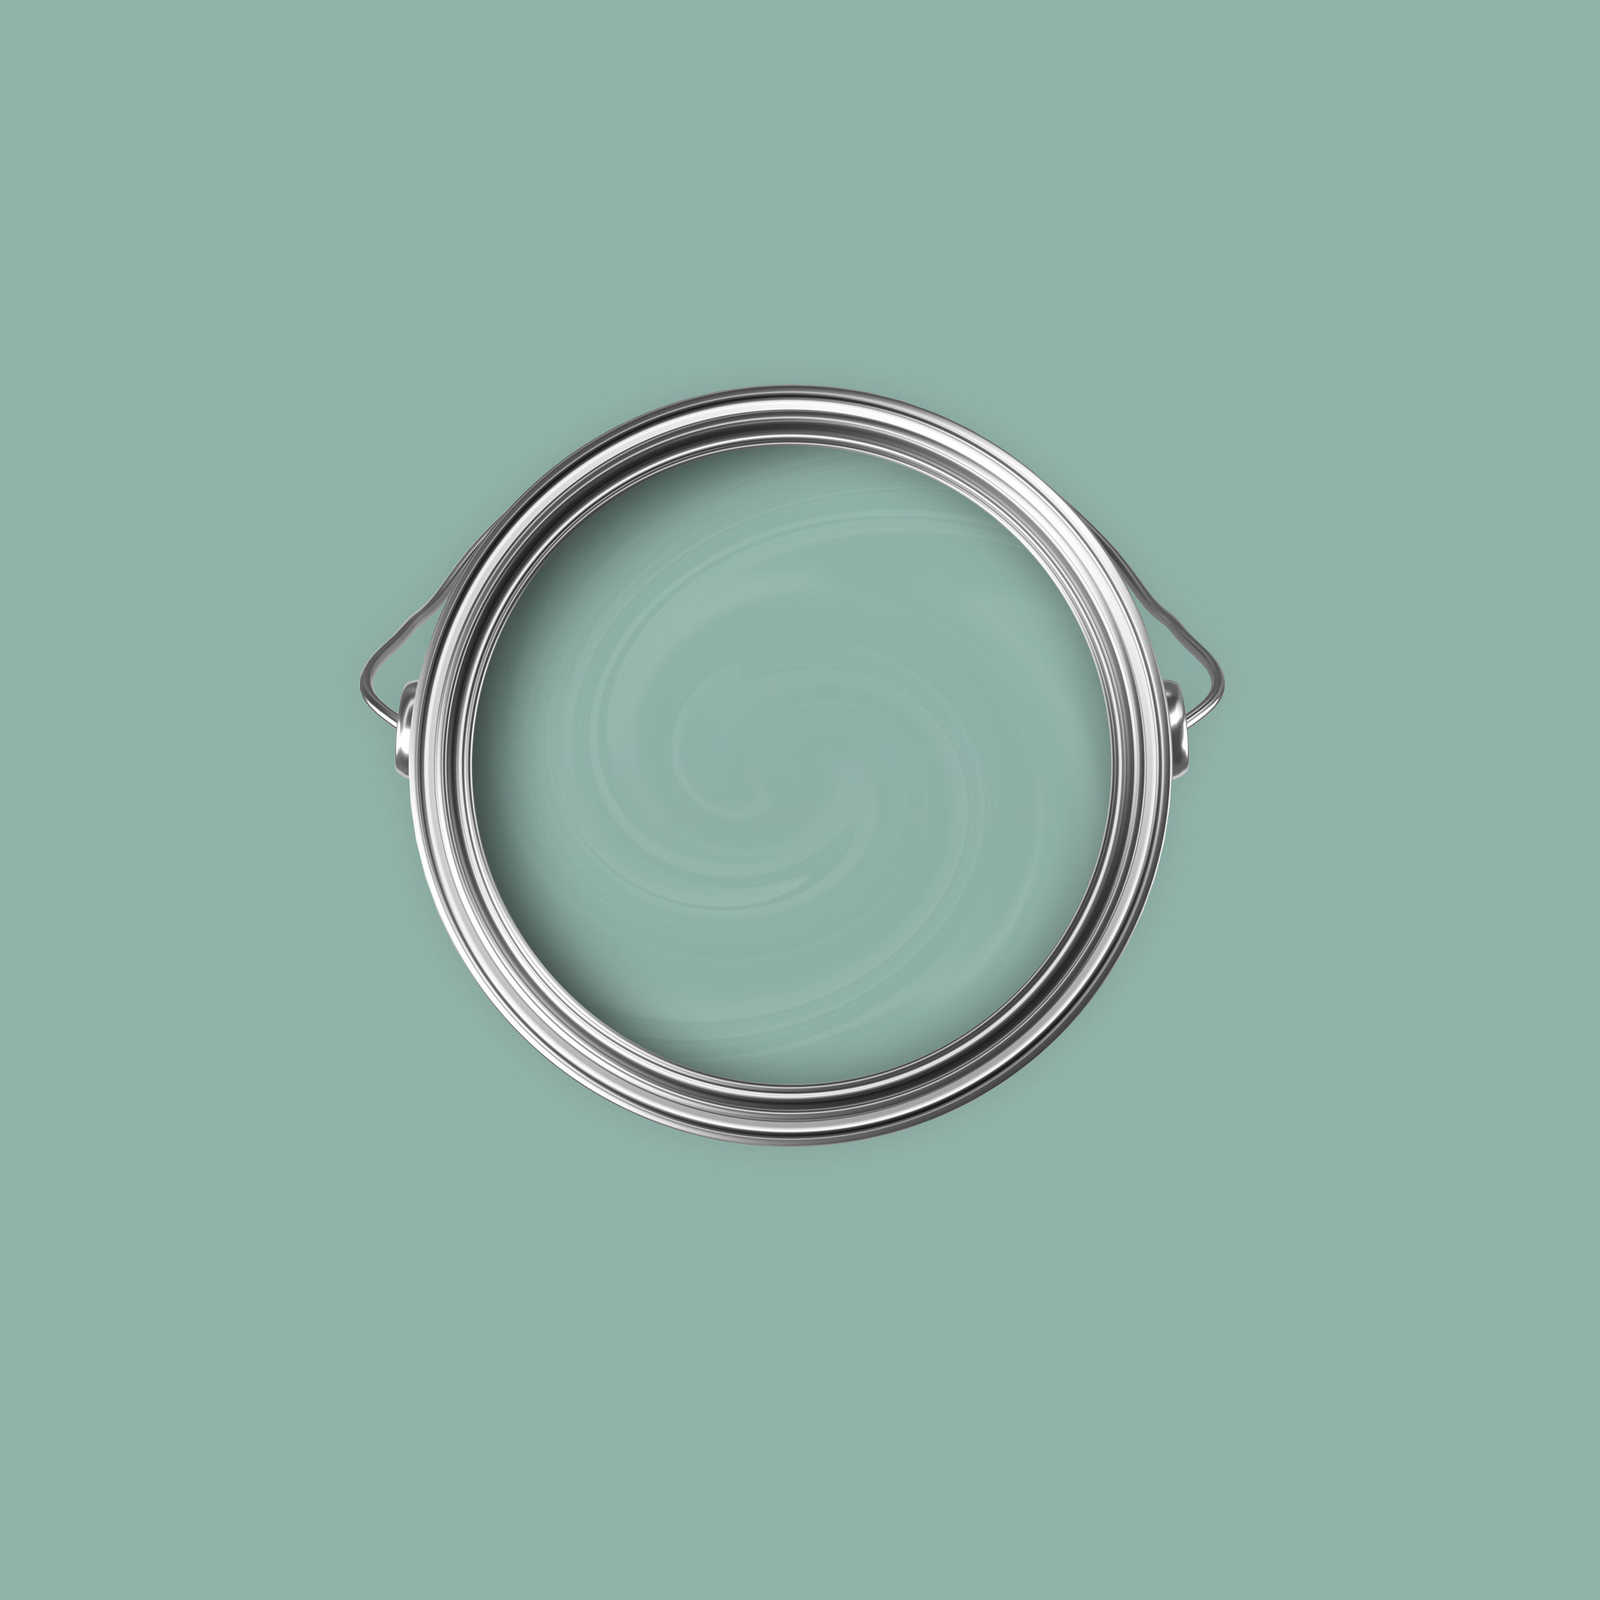             Premium Wandfarbe freundliches Jadegrün »Sweet Sage« NW402 – 2,5 Liter
        